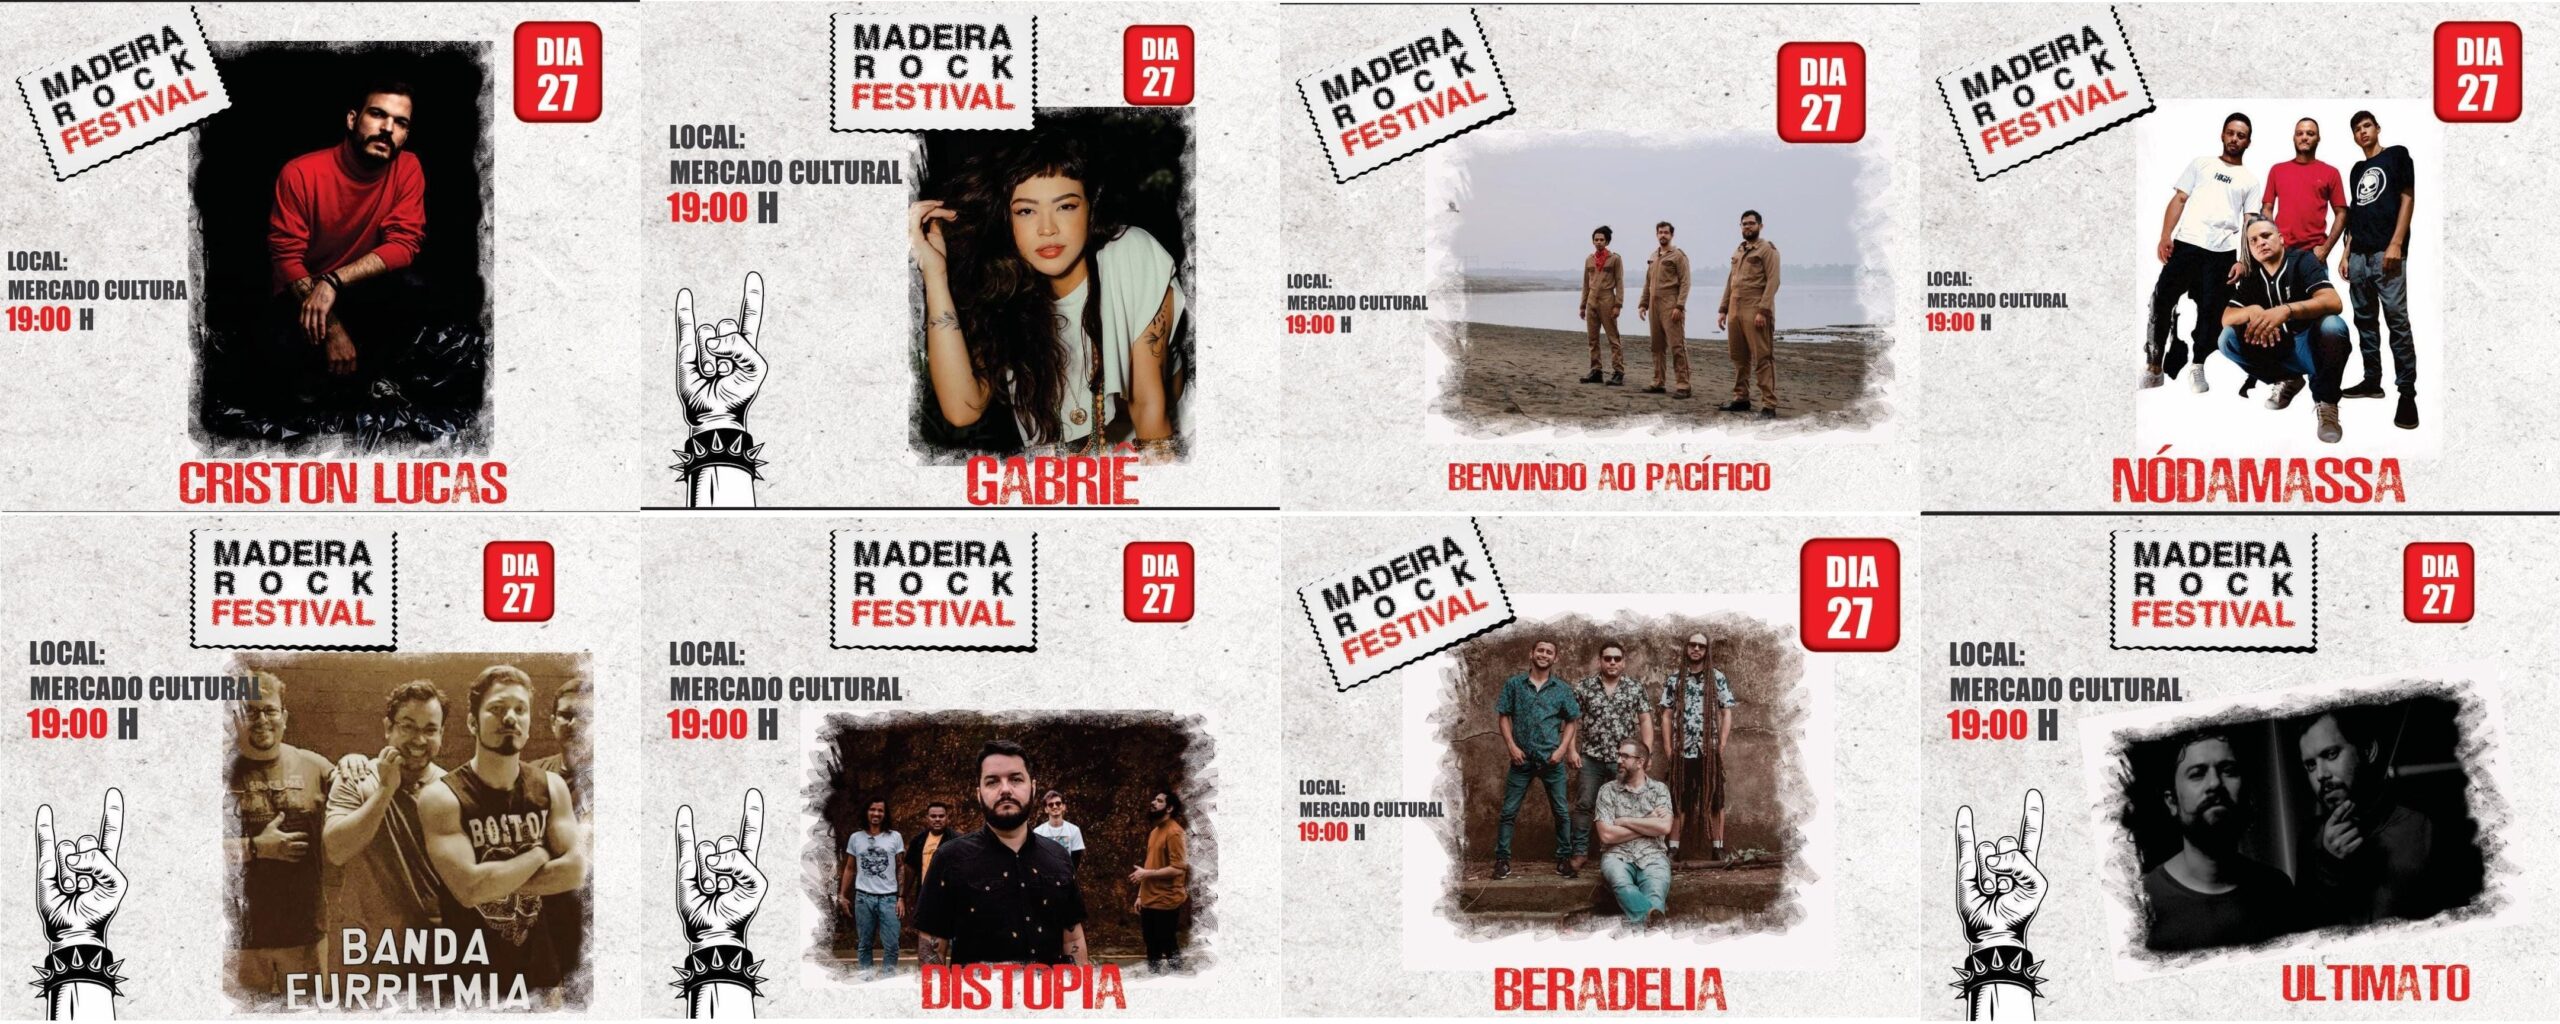 Agenda News: Madeira Rock Festival está de volta, por Renata Camurça - News Rondônia